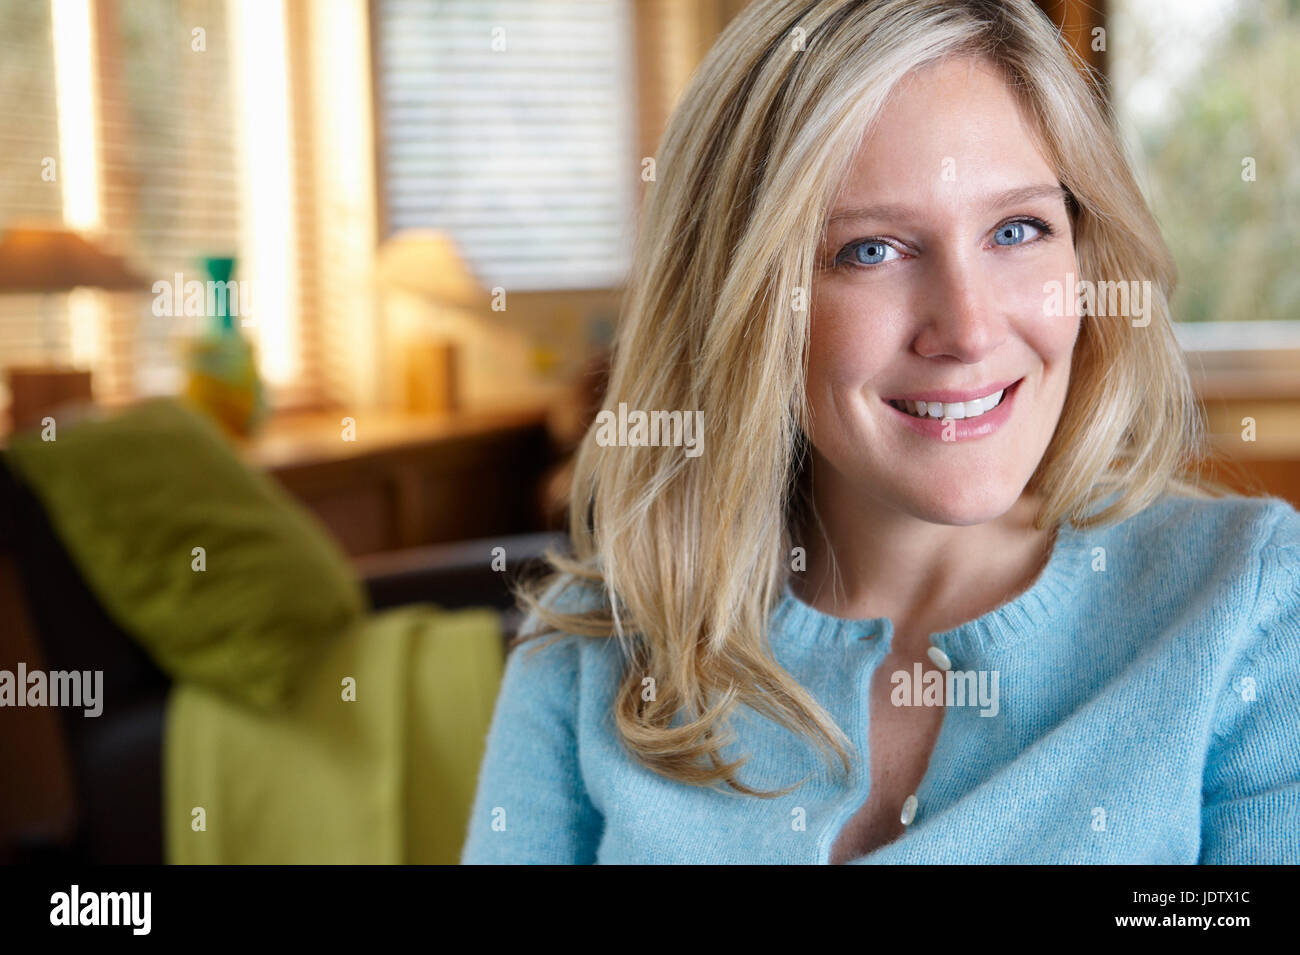 Portrait of a woman smiling Banque D'Images